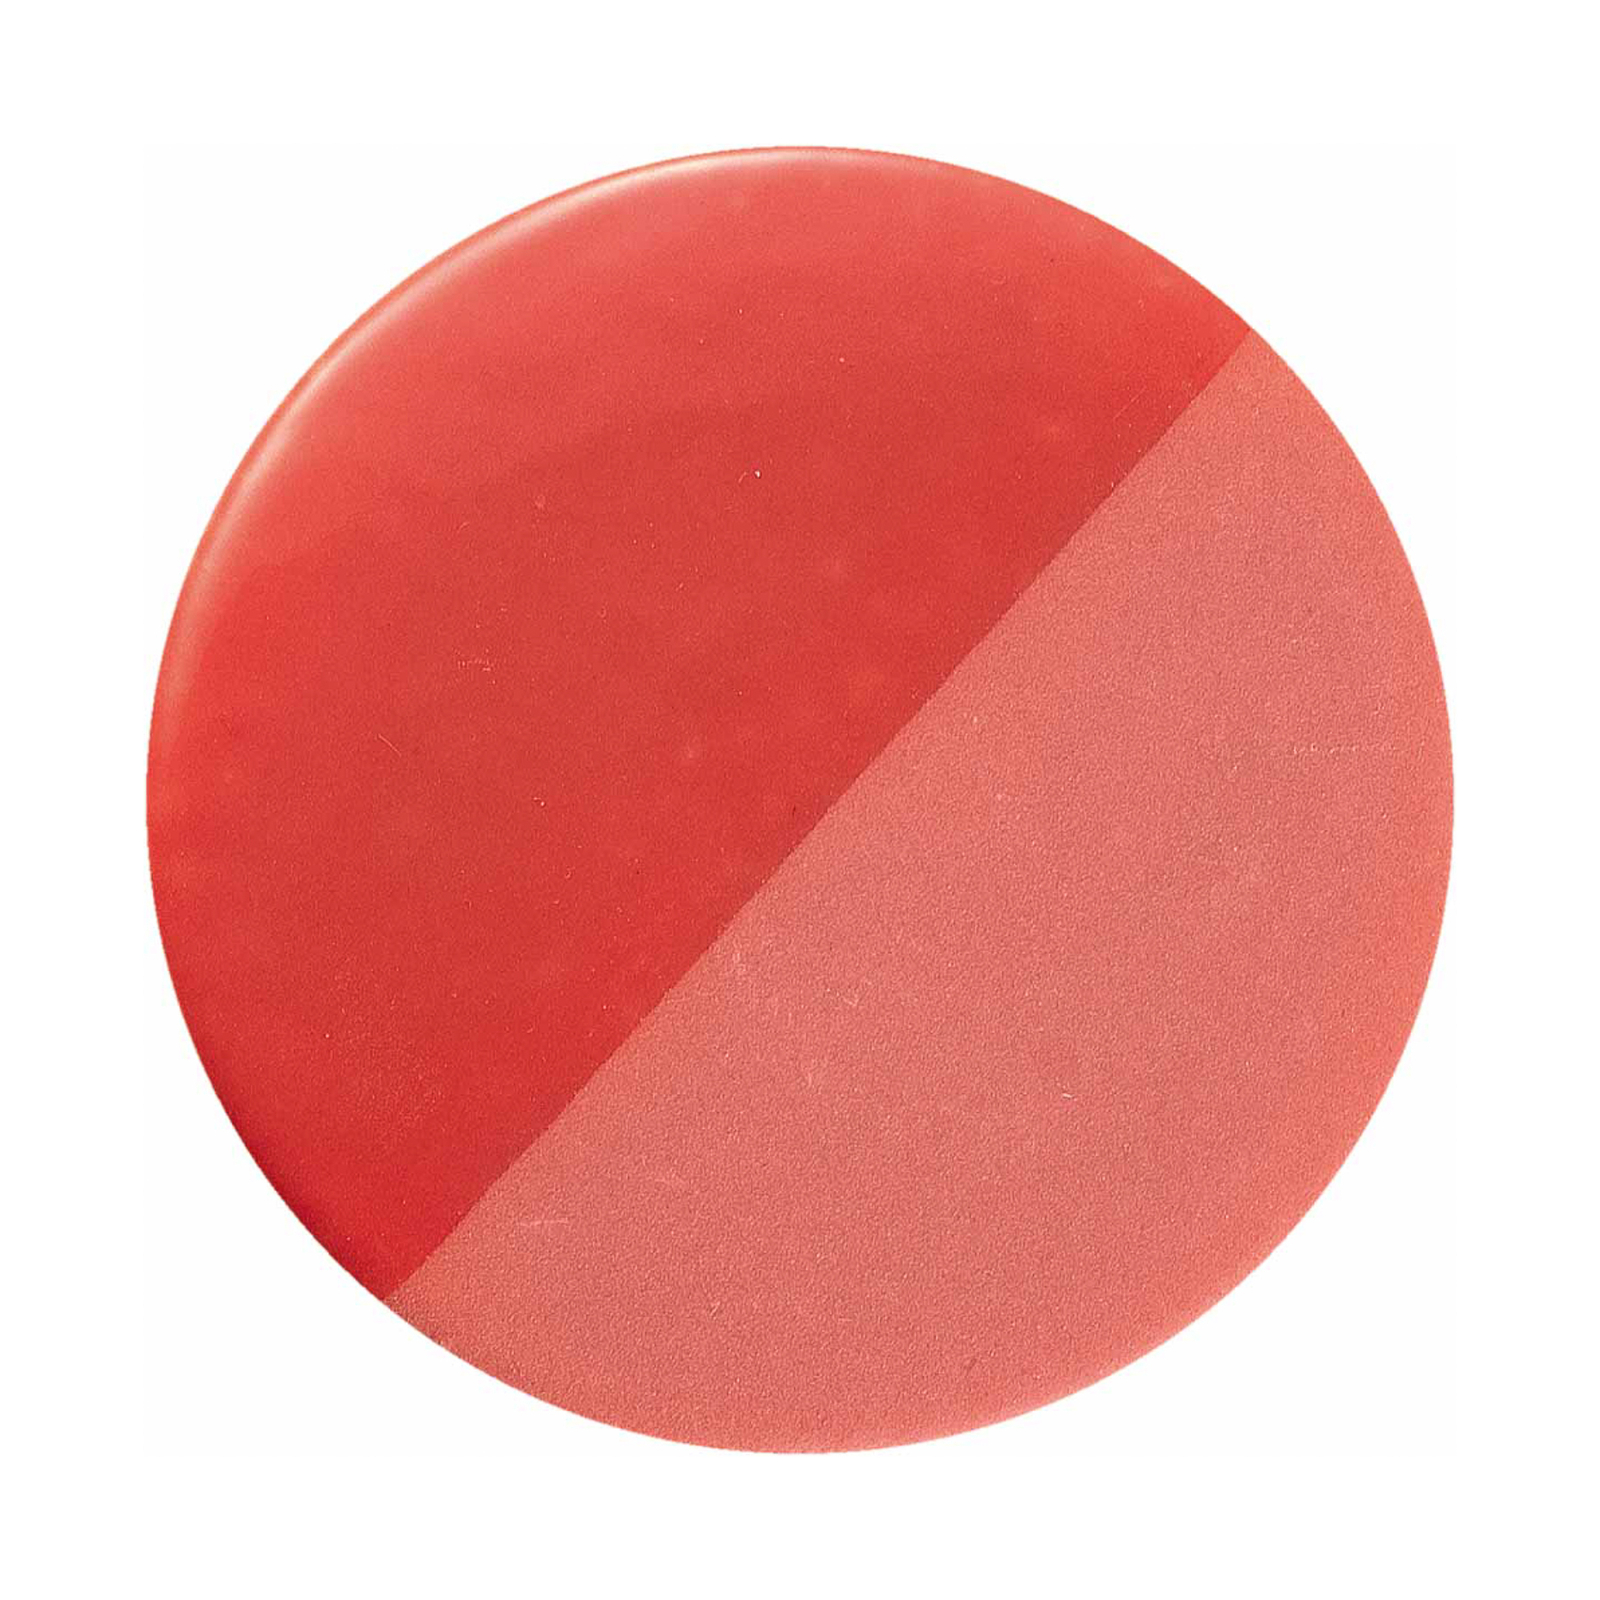 Caxixi-pendel i keramik, rød